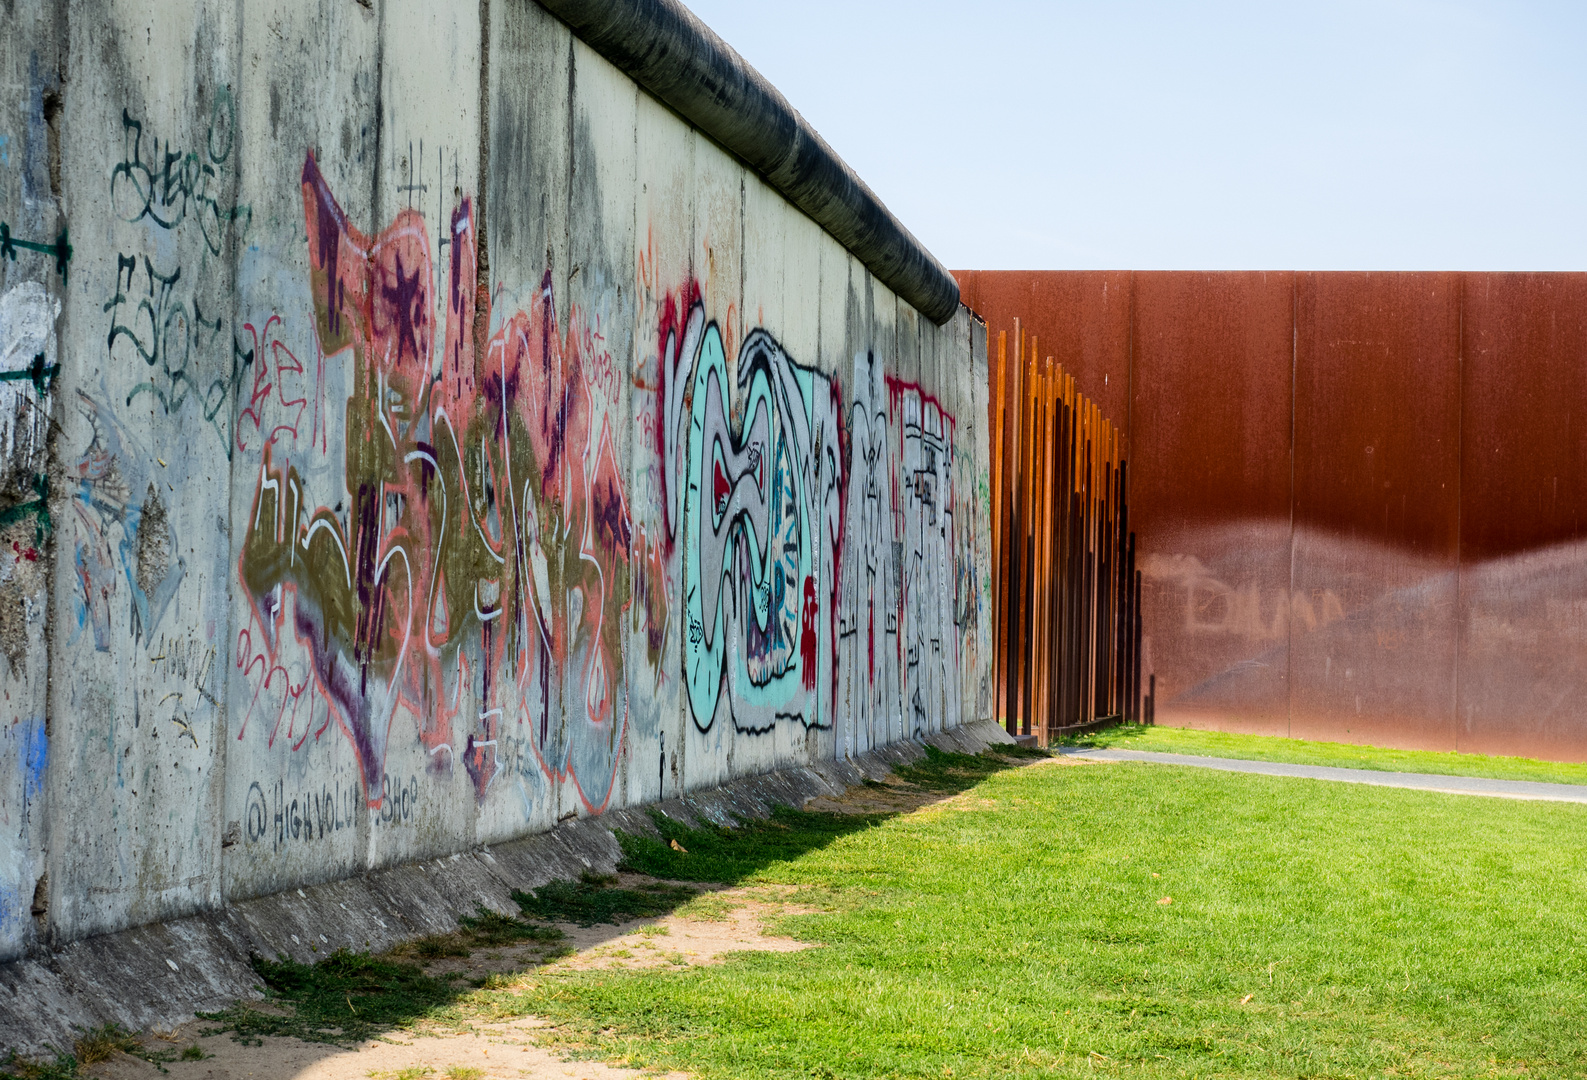 die Mauer in Berlin - 2018, eine nachdenkliche Erfahrung